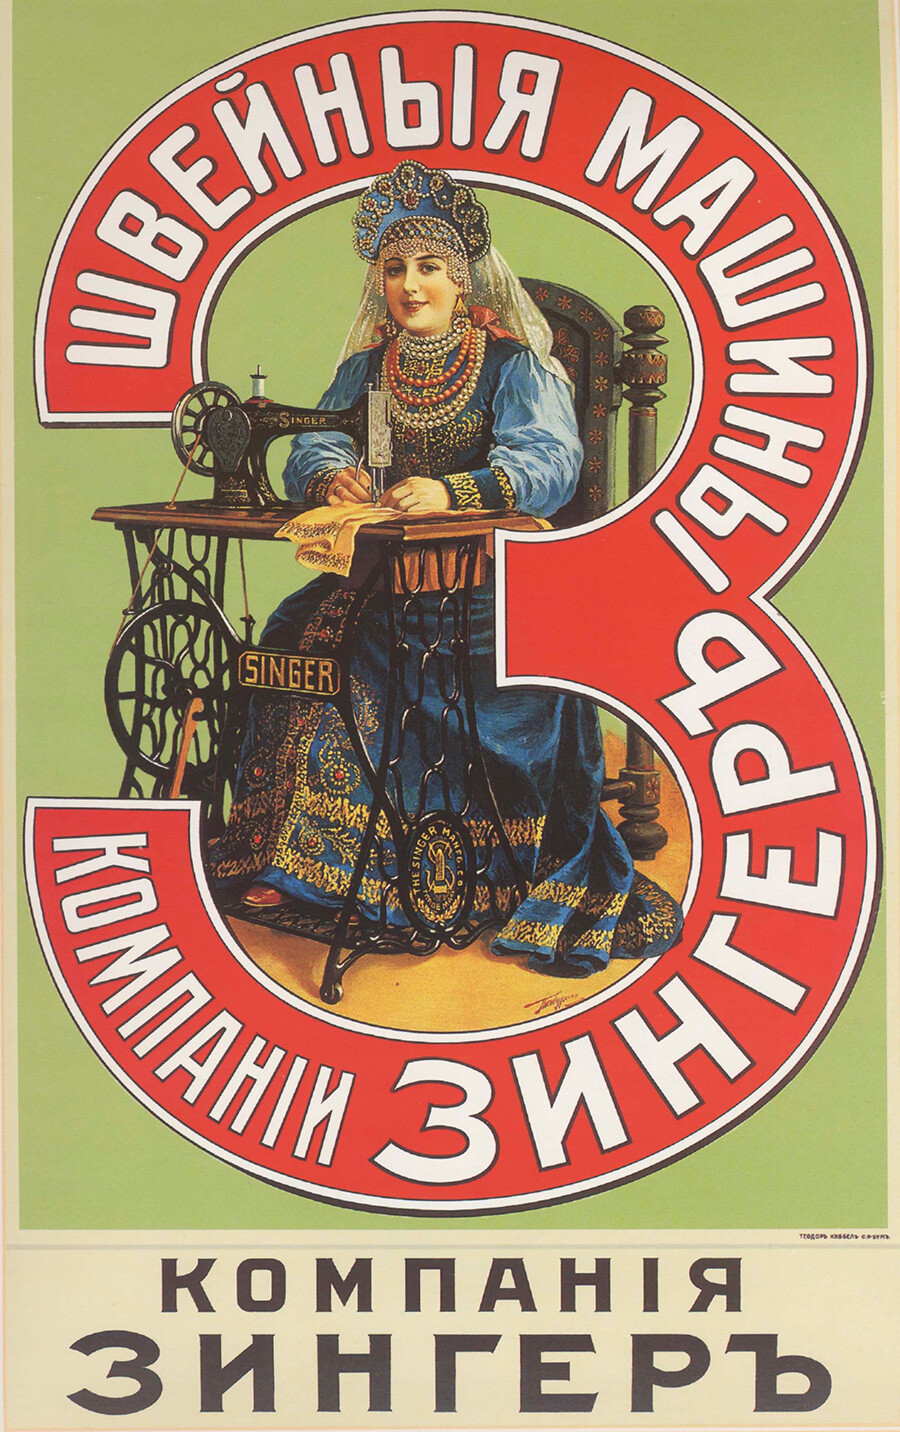 Affiche publicitaire, années 1900